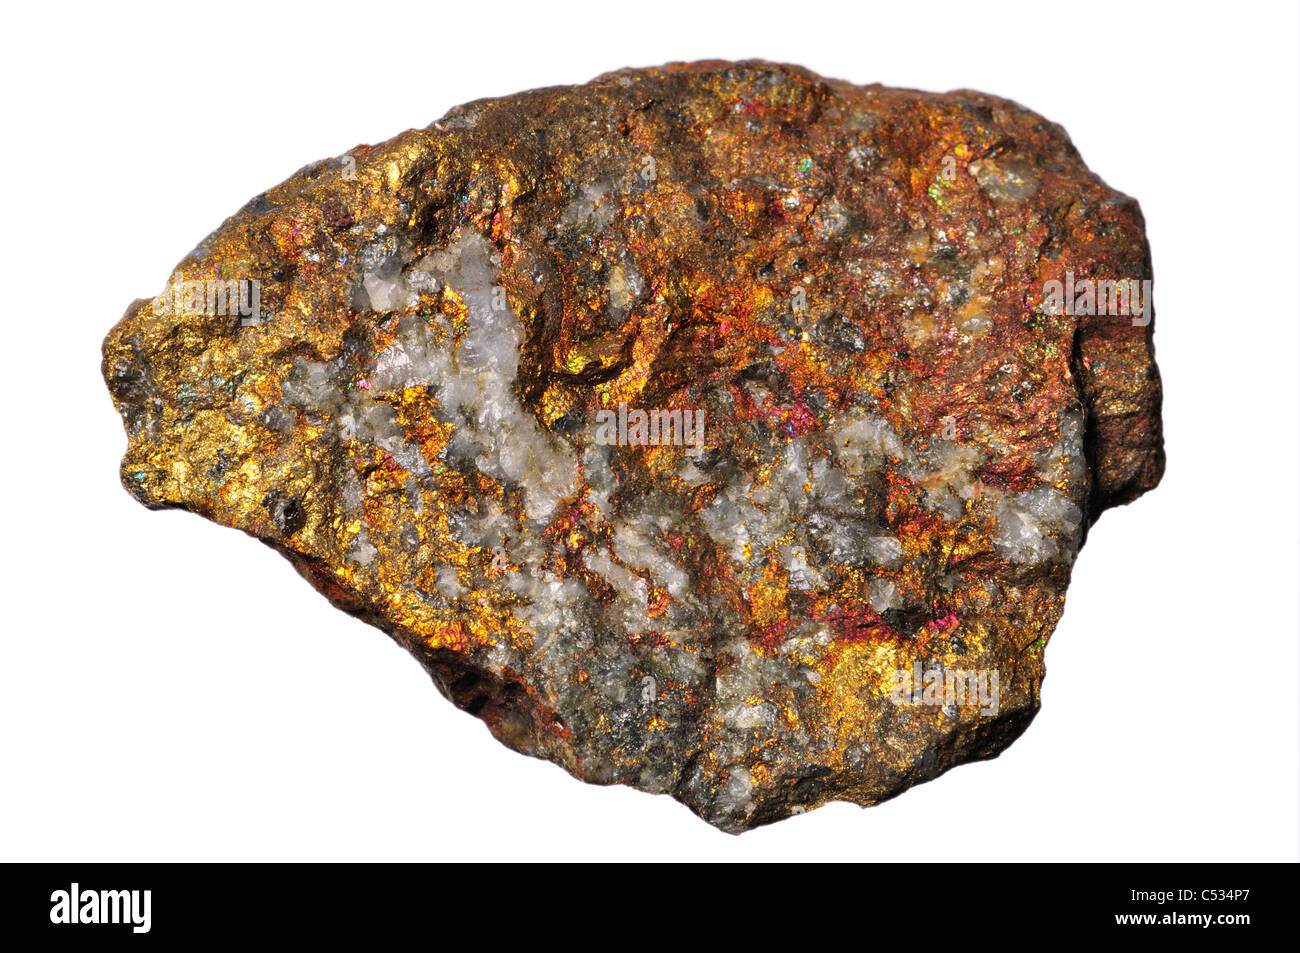 La chalcopyrite / Peacock Ore (Italie) sulfure de cuivre - cuivre de minerai important Banque D'Images